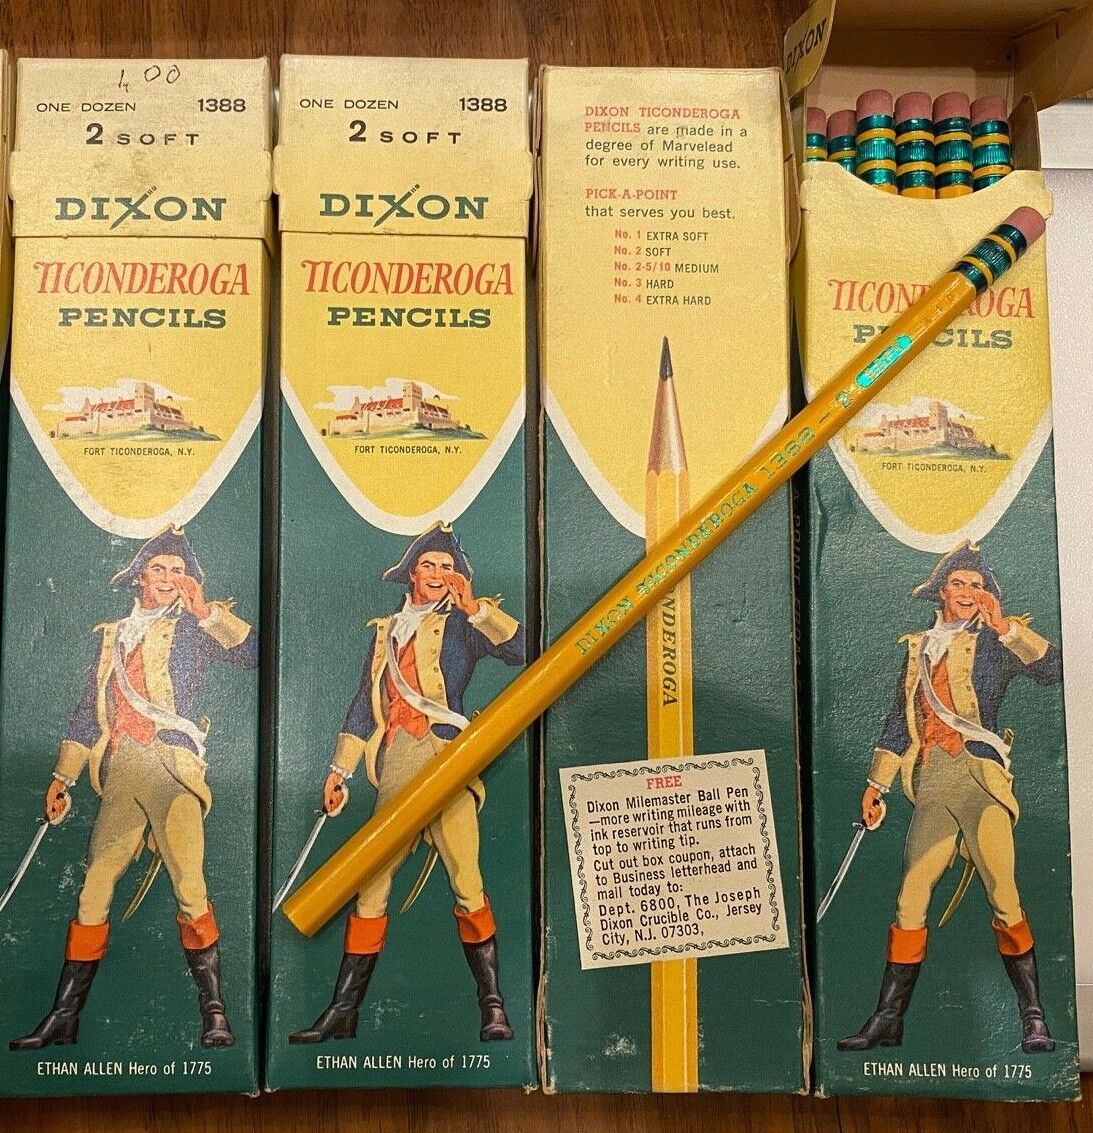 2 Soft  #1388 Ethan Allen Cover Ethan Allen One Dozen Dixon Ticonderoga Pencils No 